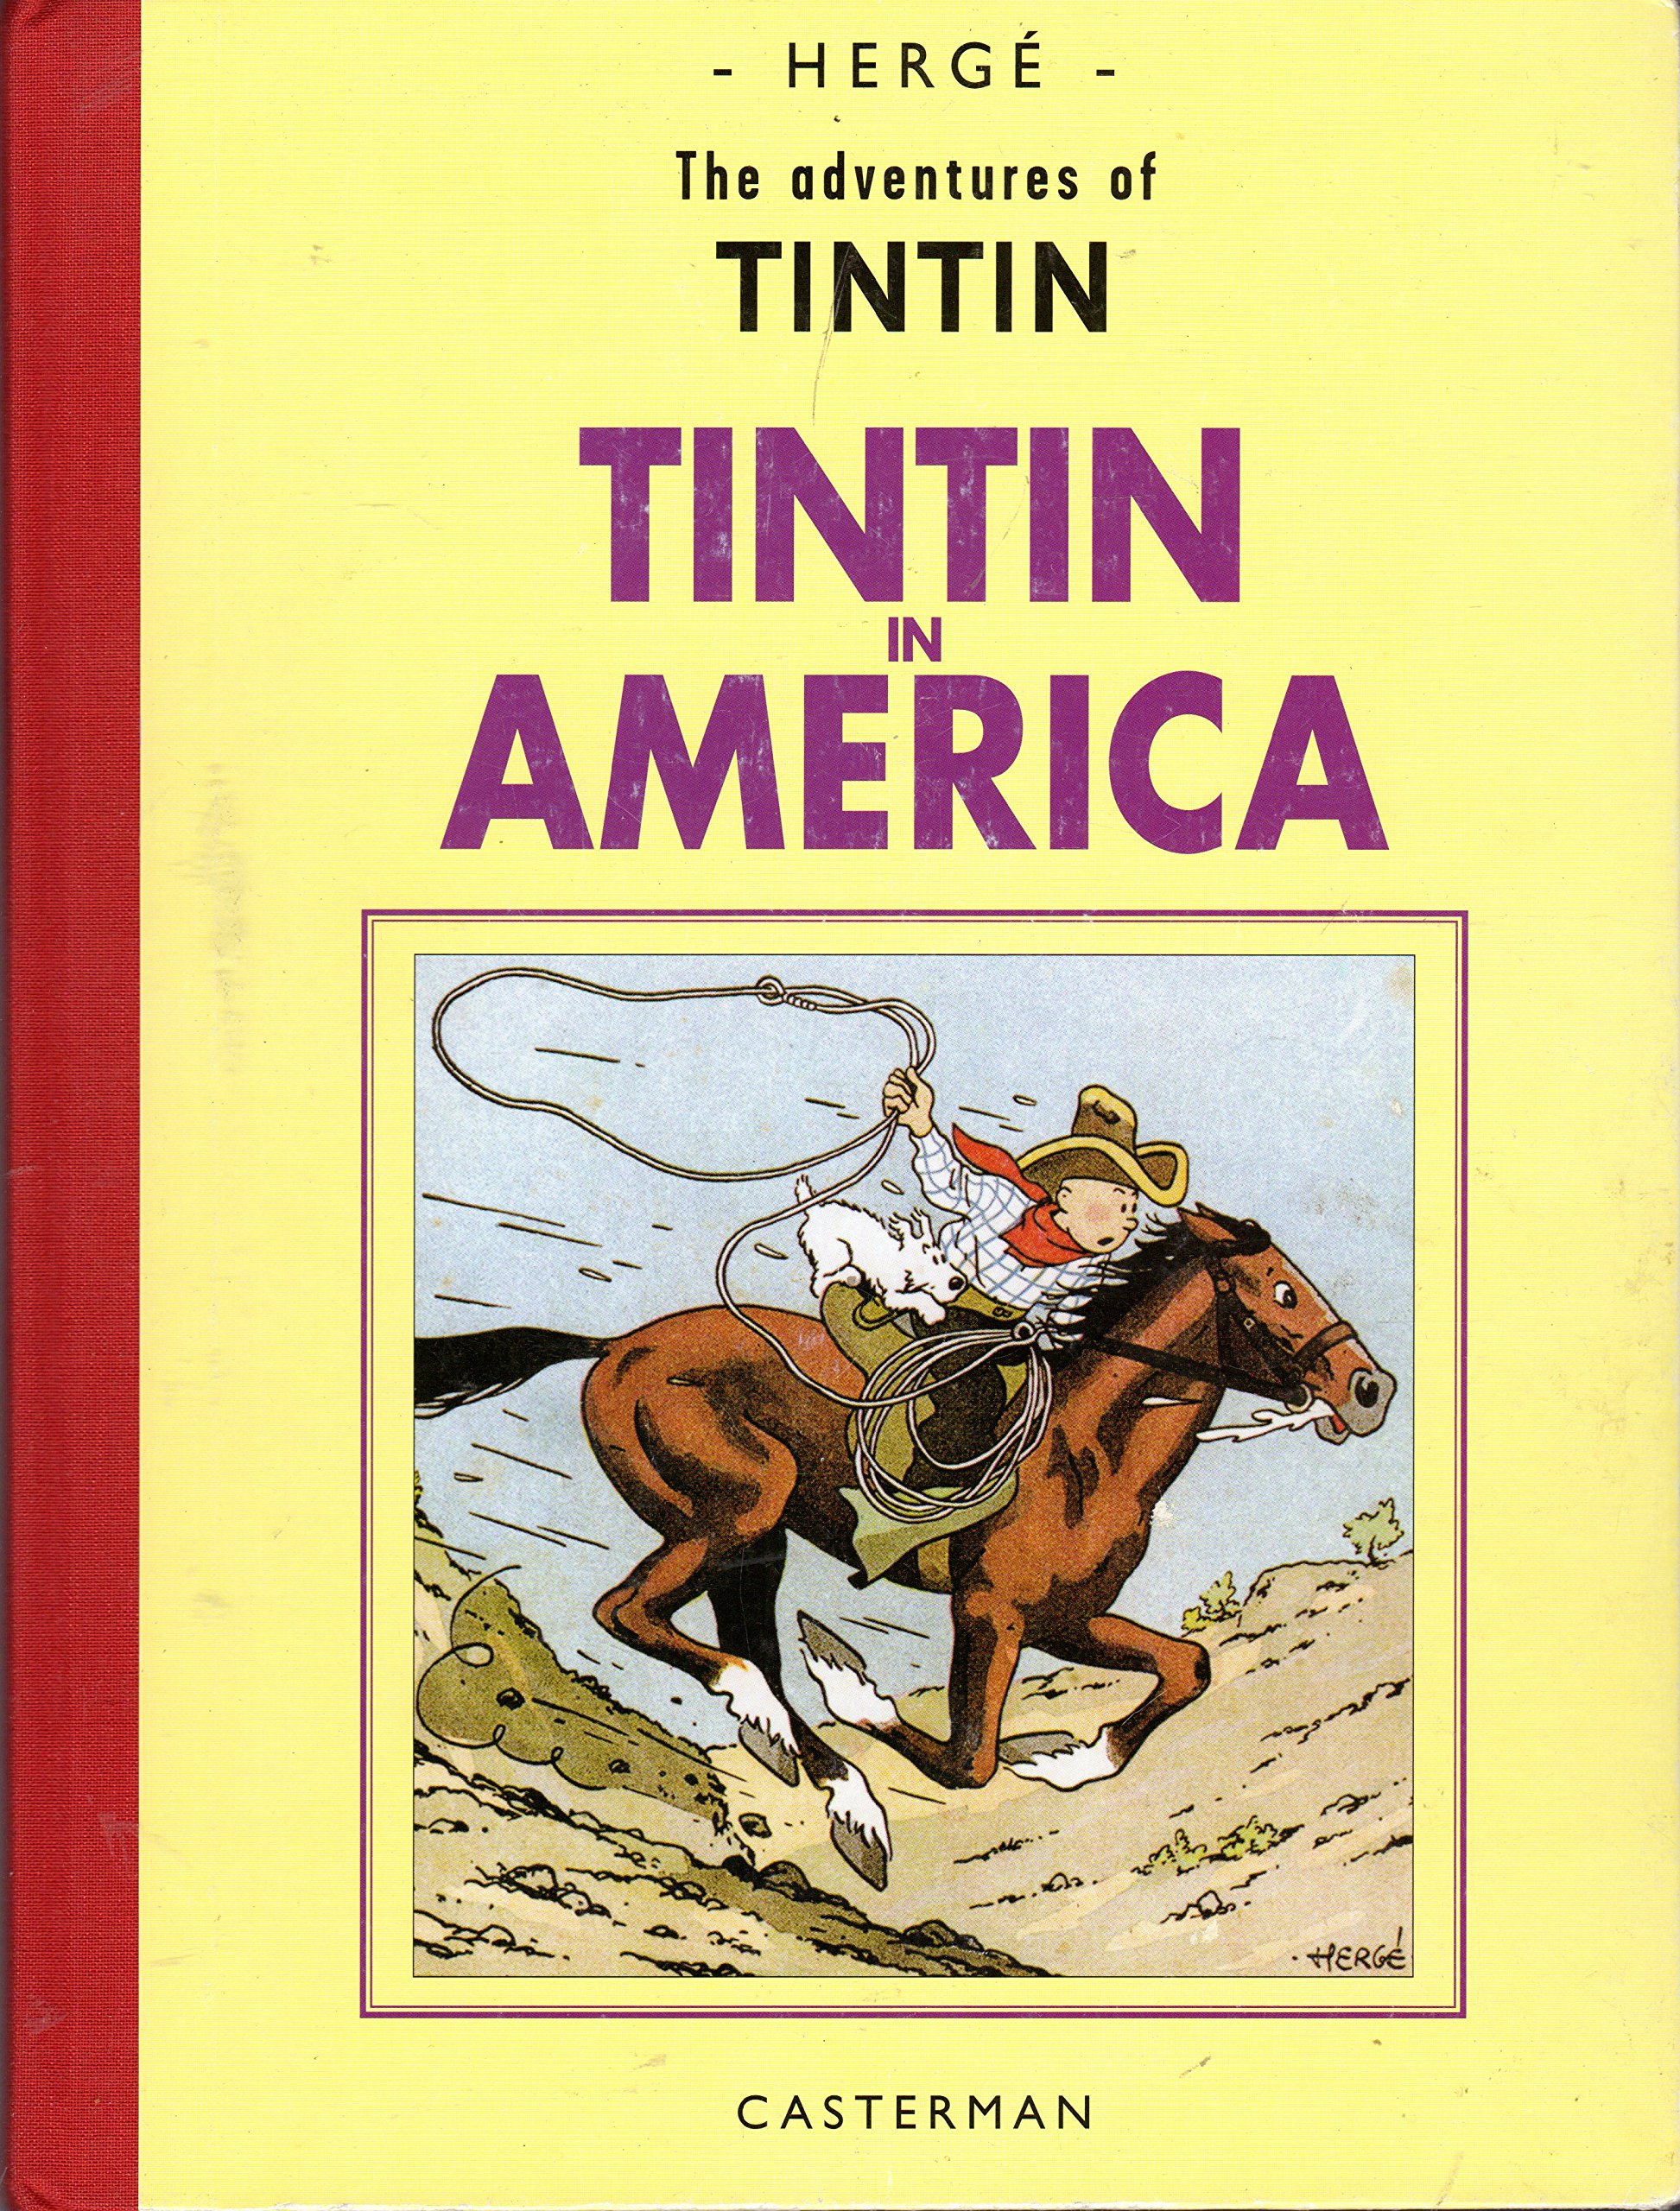 Tintin in the Congo - Wikipedia